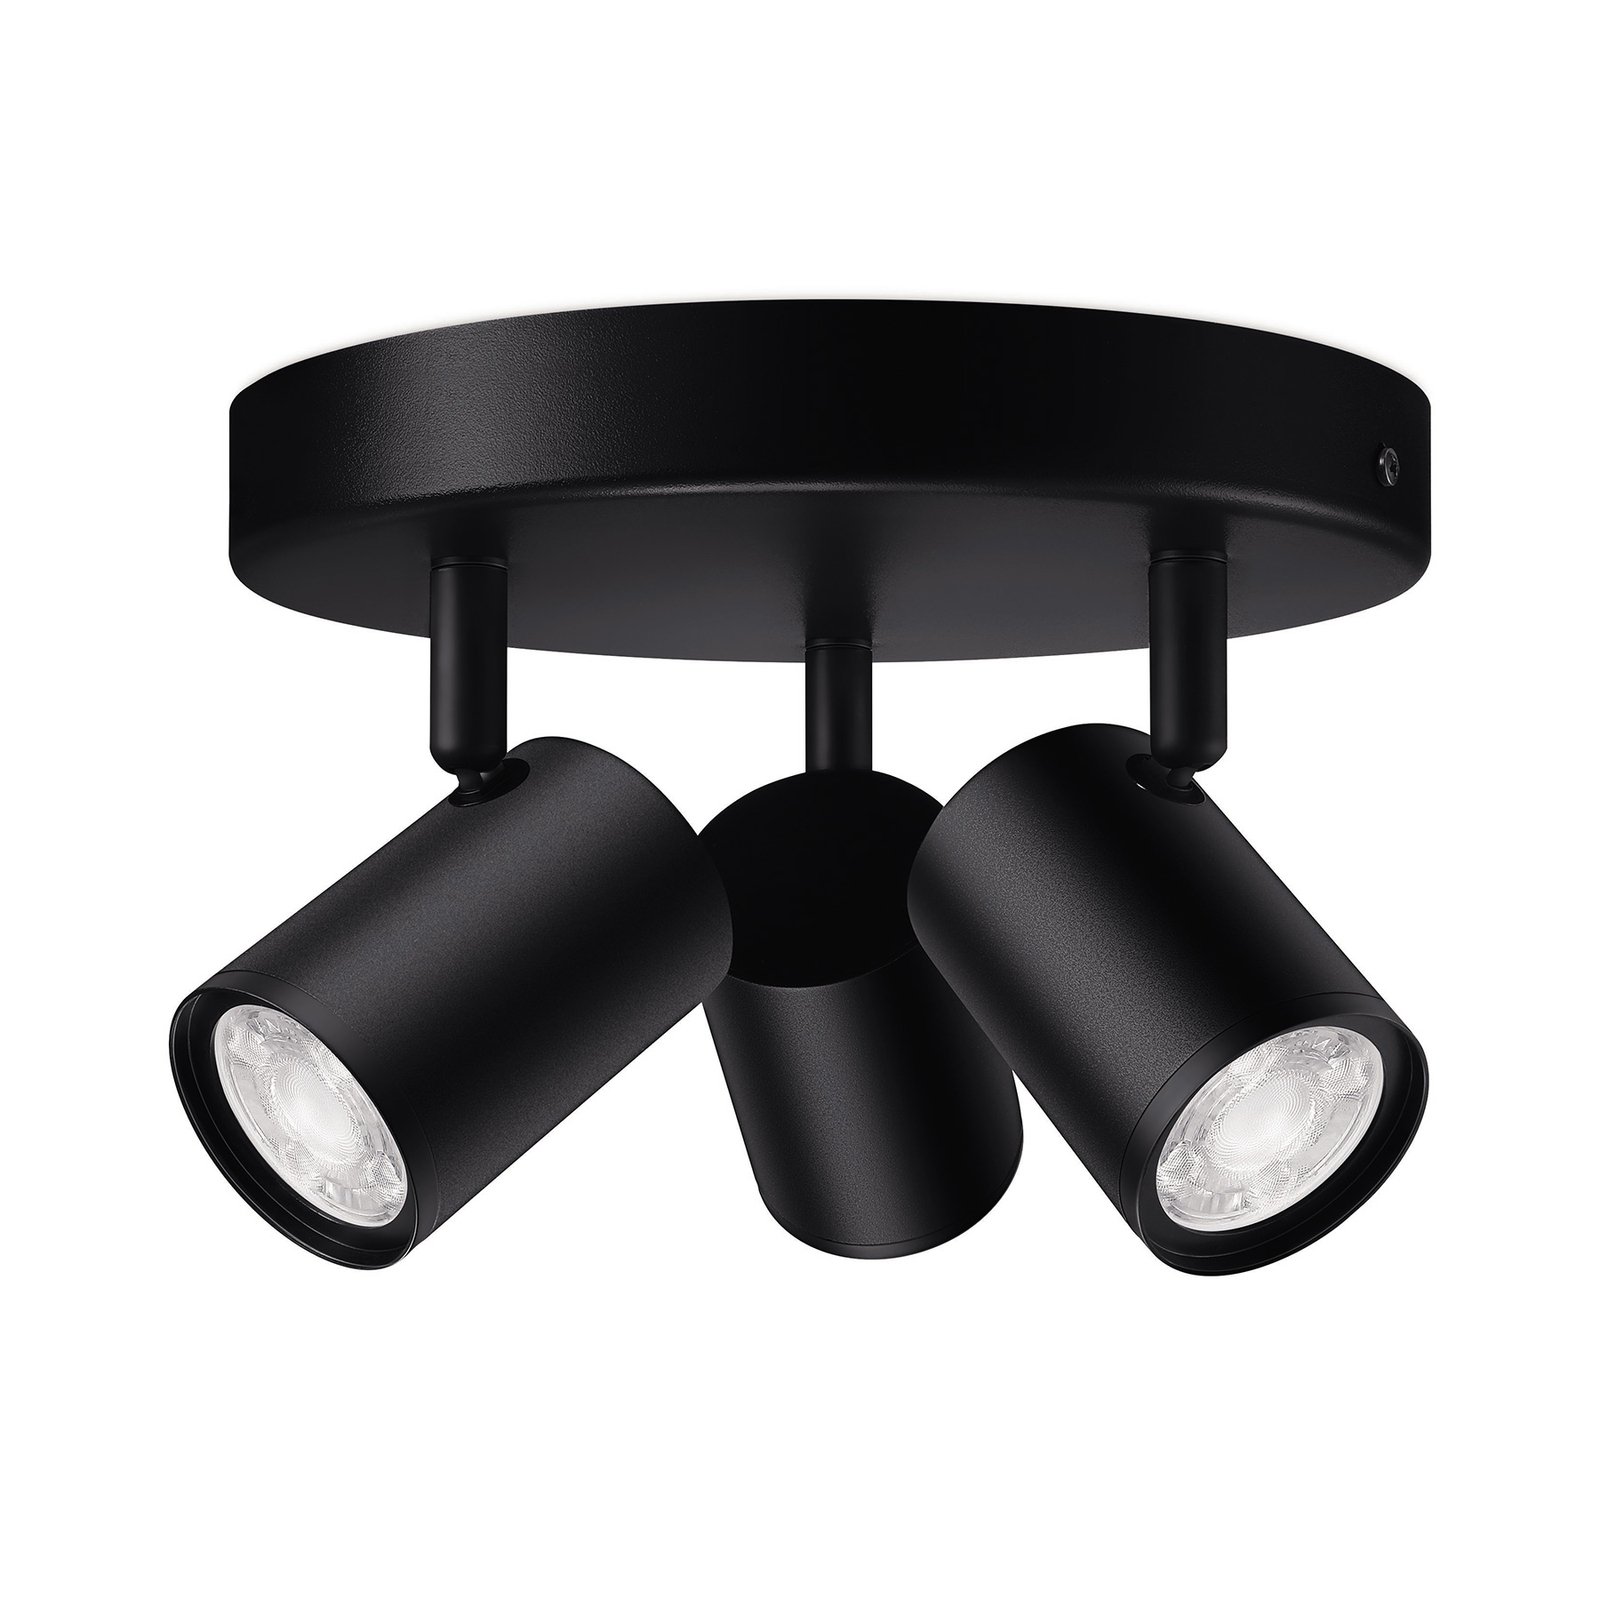 WiZ LED спот за таван Imageo, 3-светли кръгли, черни